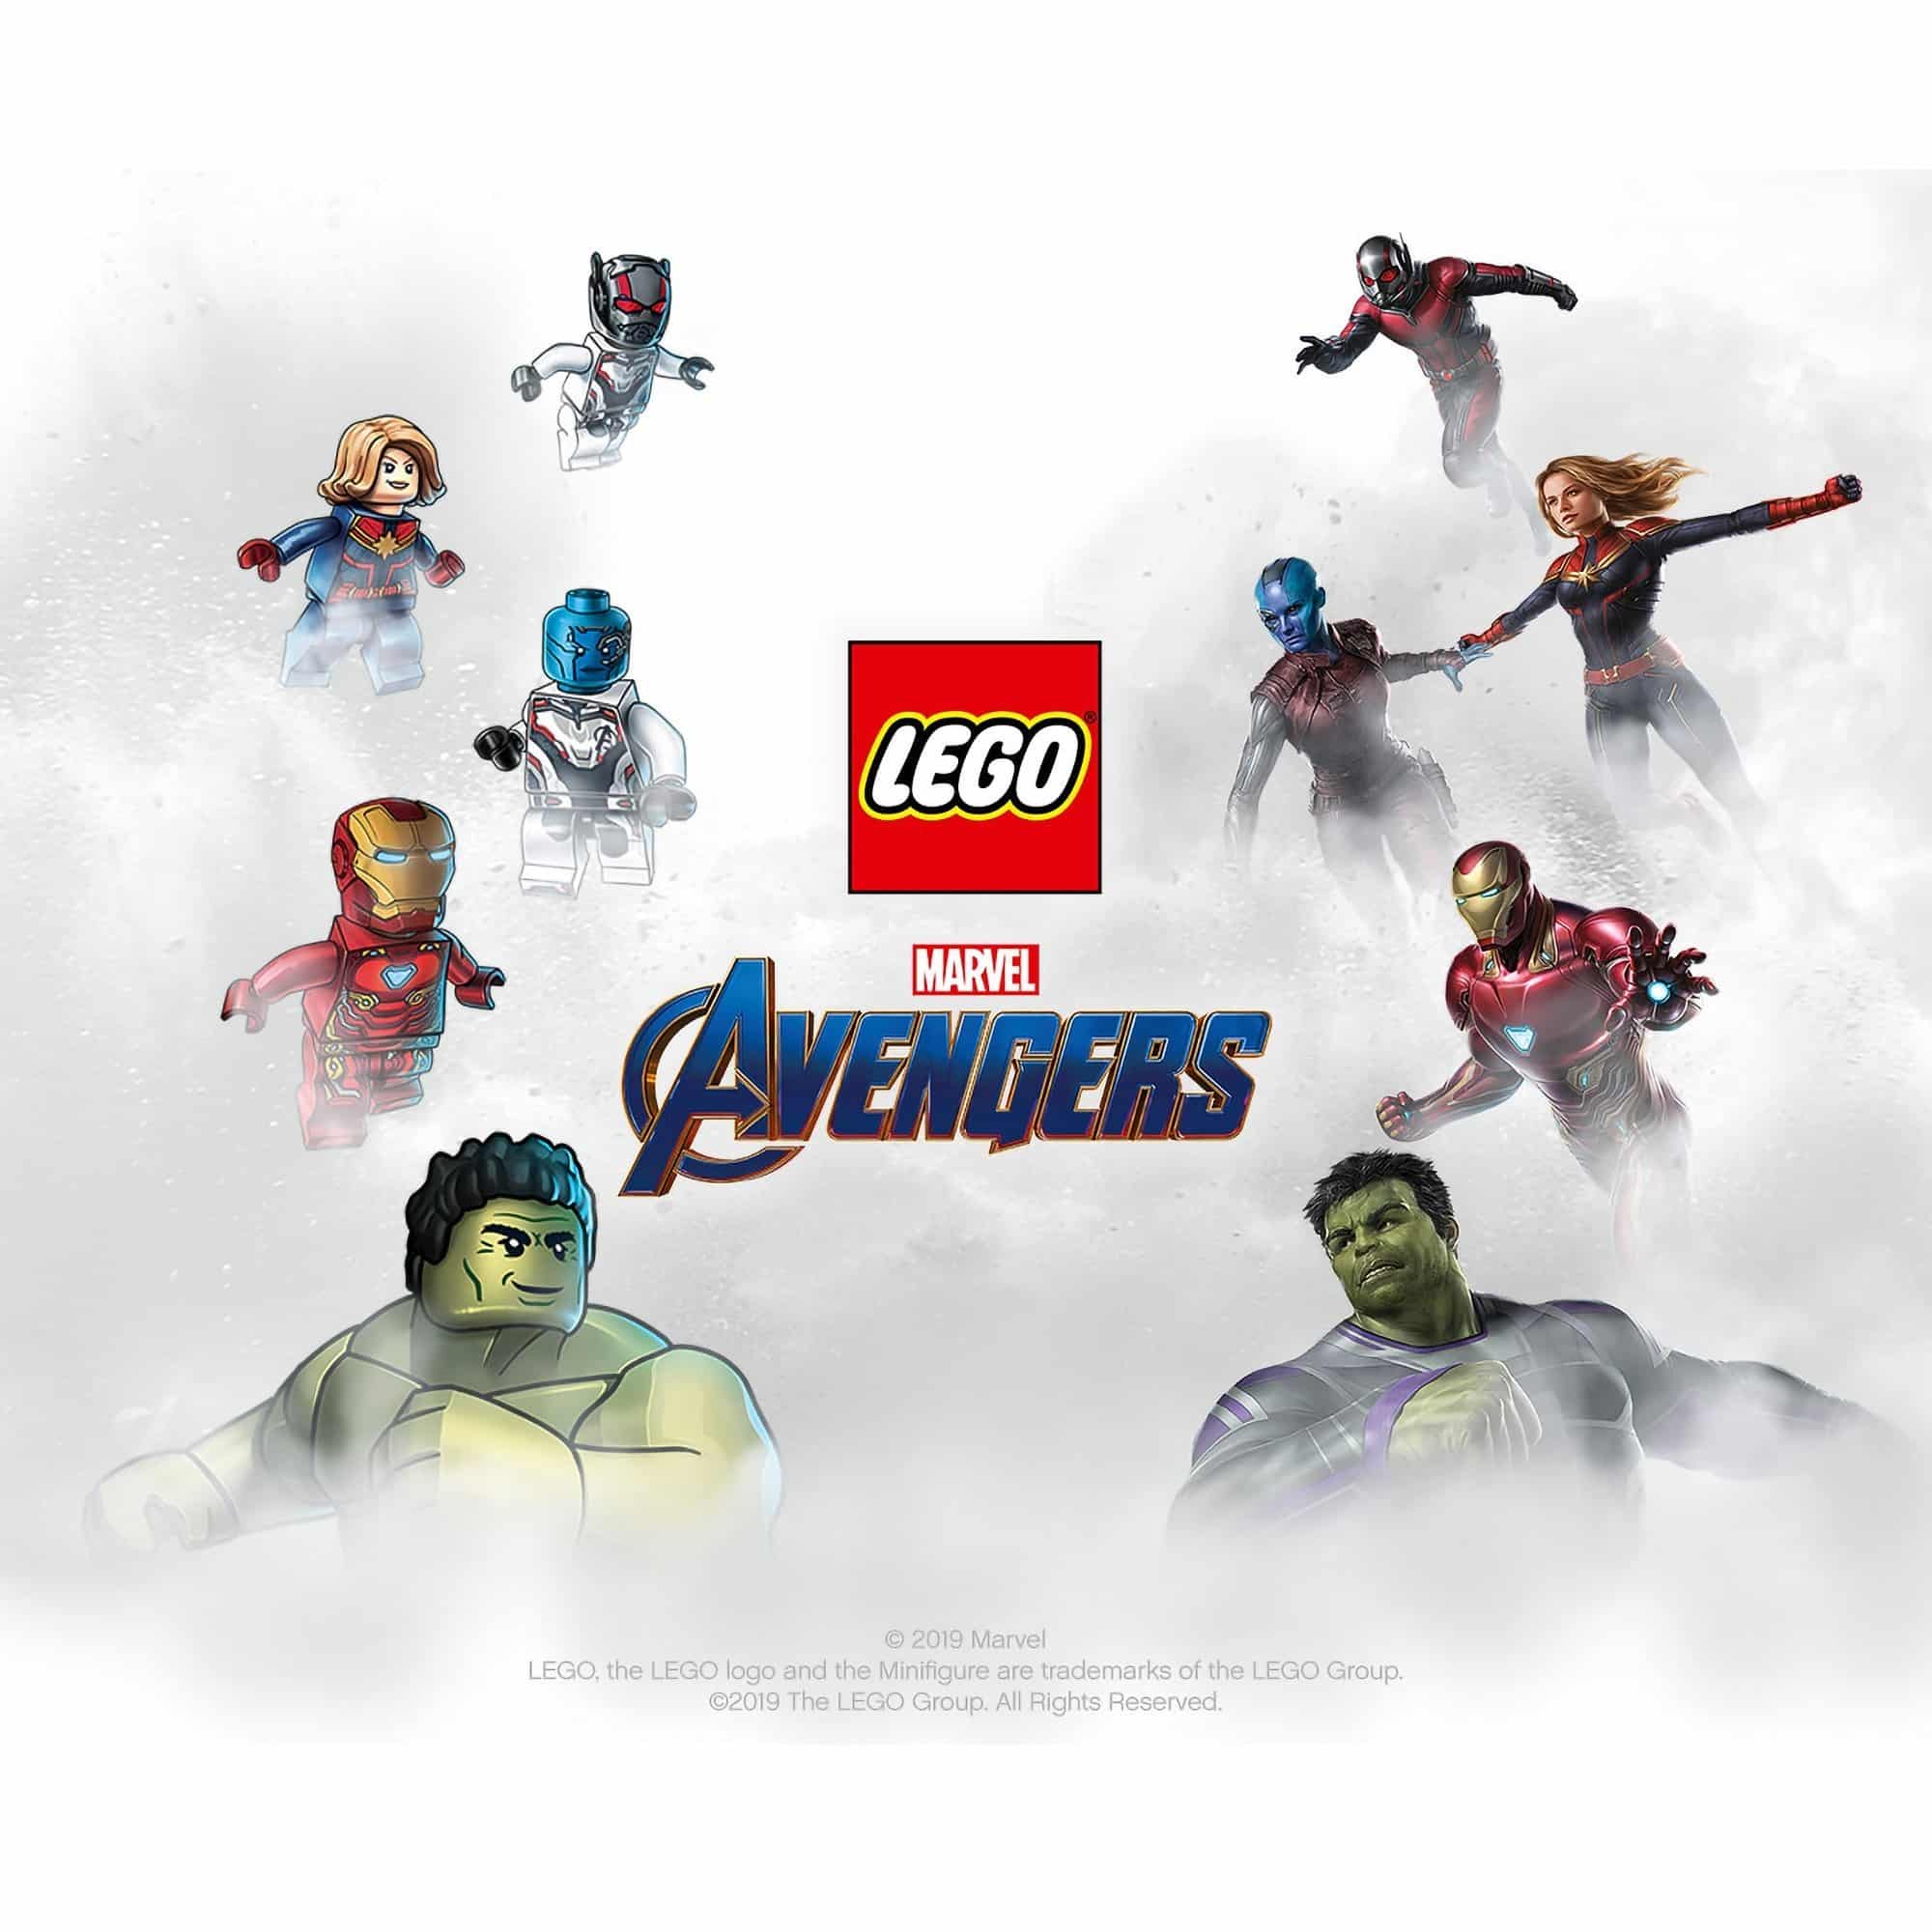 LEGO - Marvel Avengers - 76126 Avengers Ultimate Quinjet